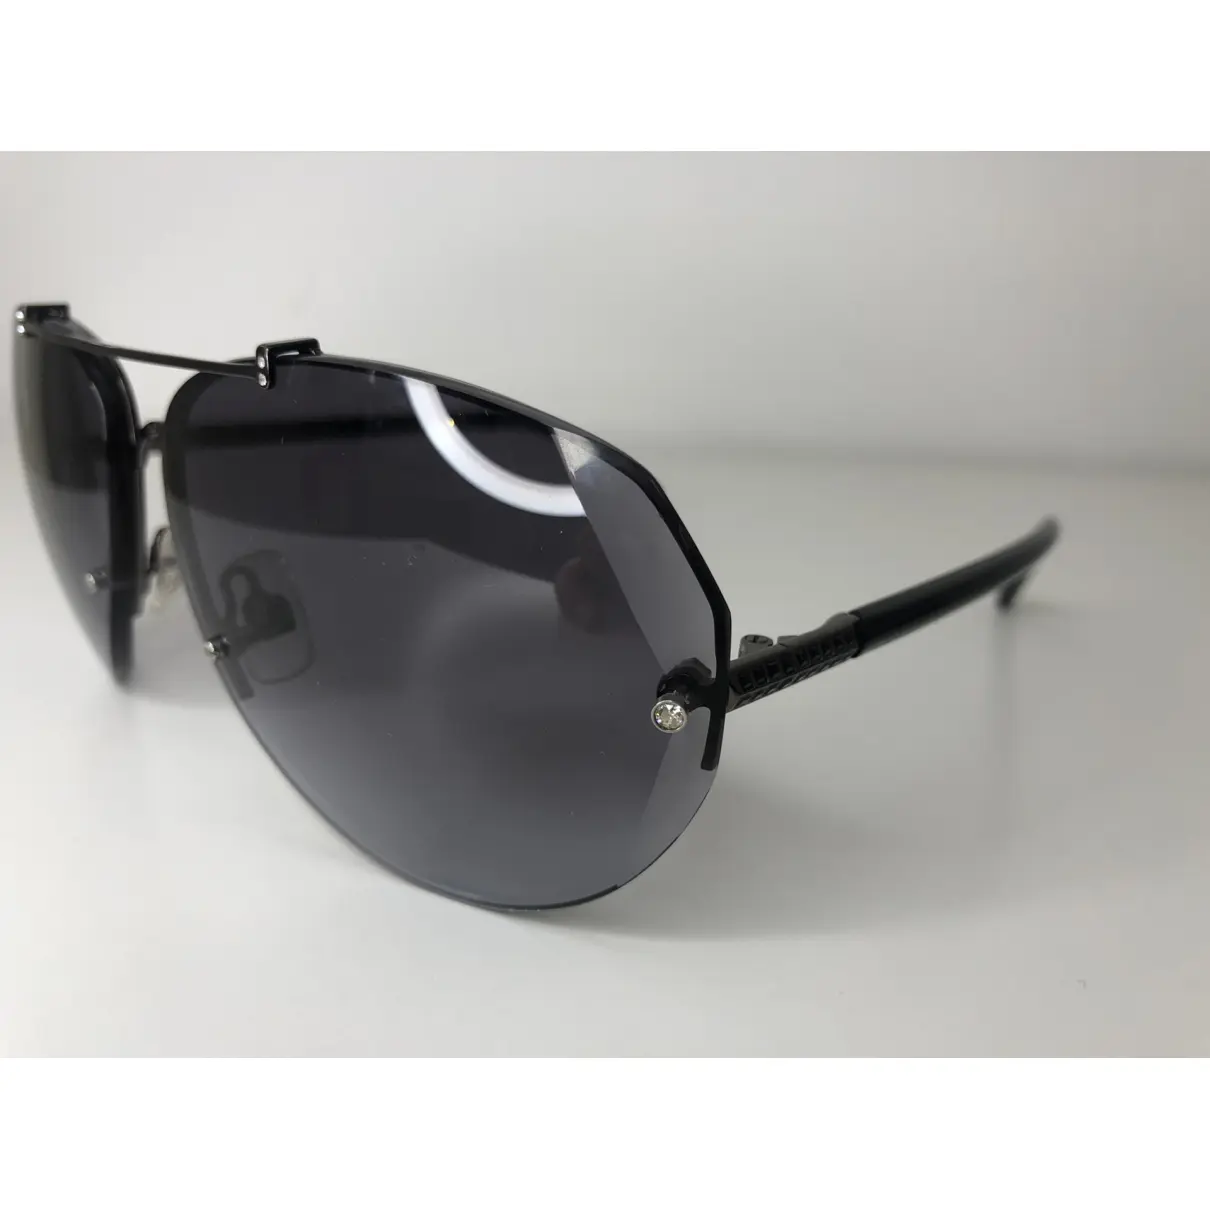 Buy Swarovski Aviator sunglasses online